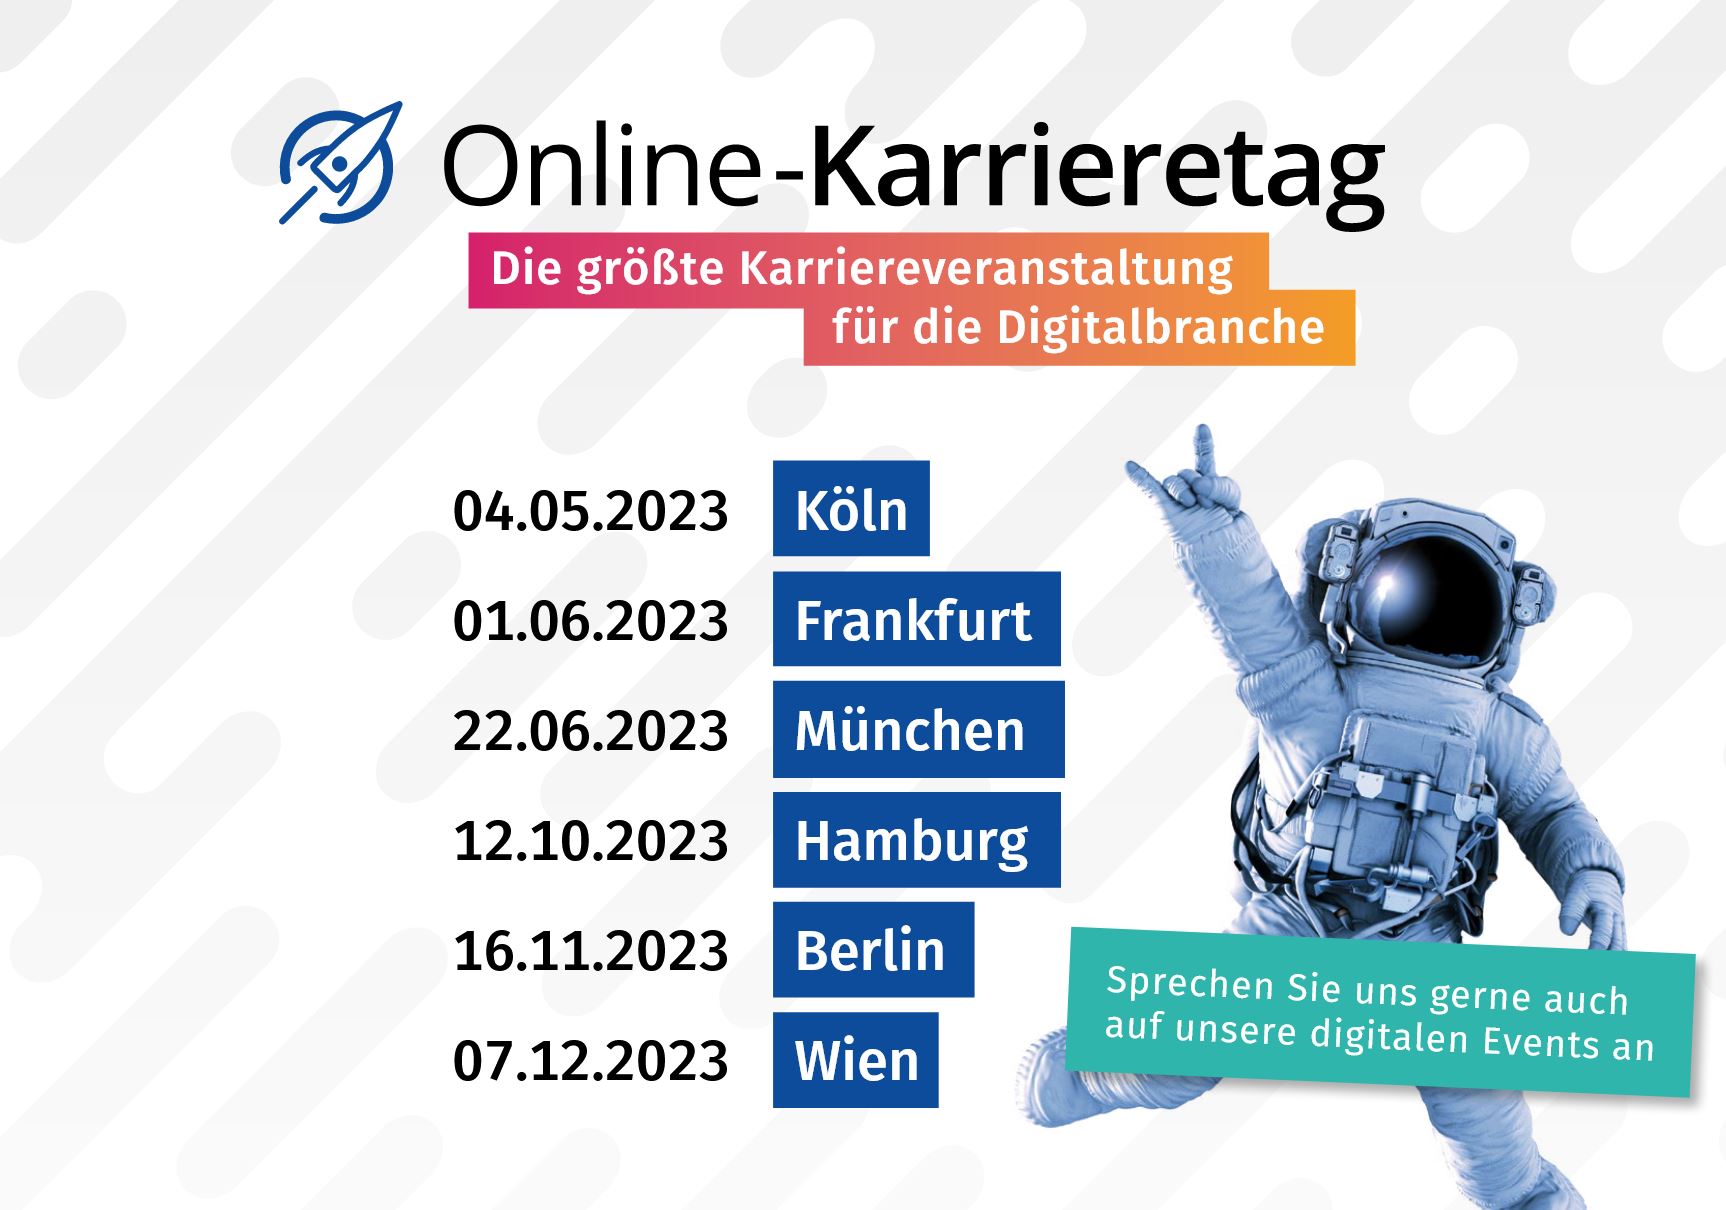 Online-Karrieretag in München – Die größte Karriereveranstaltung für die Digitalbranche